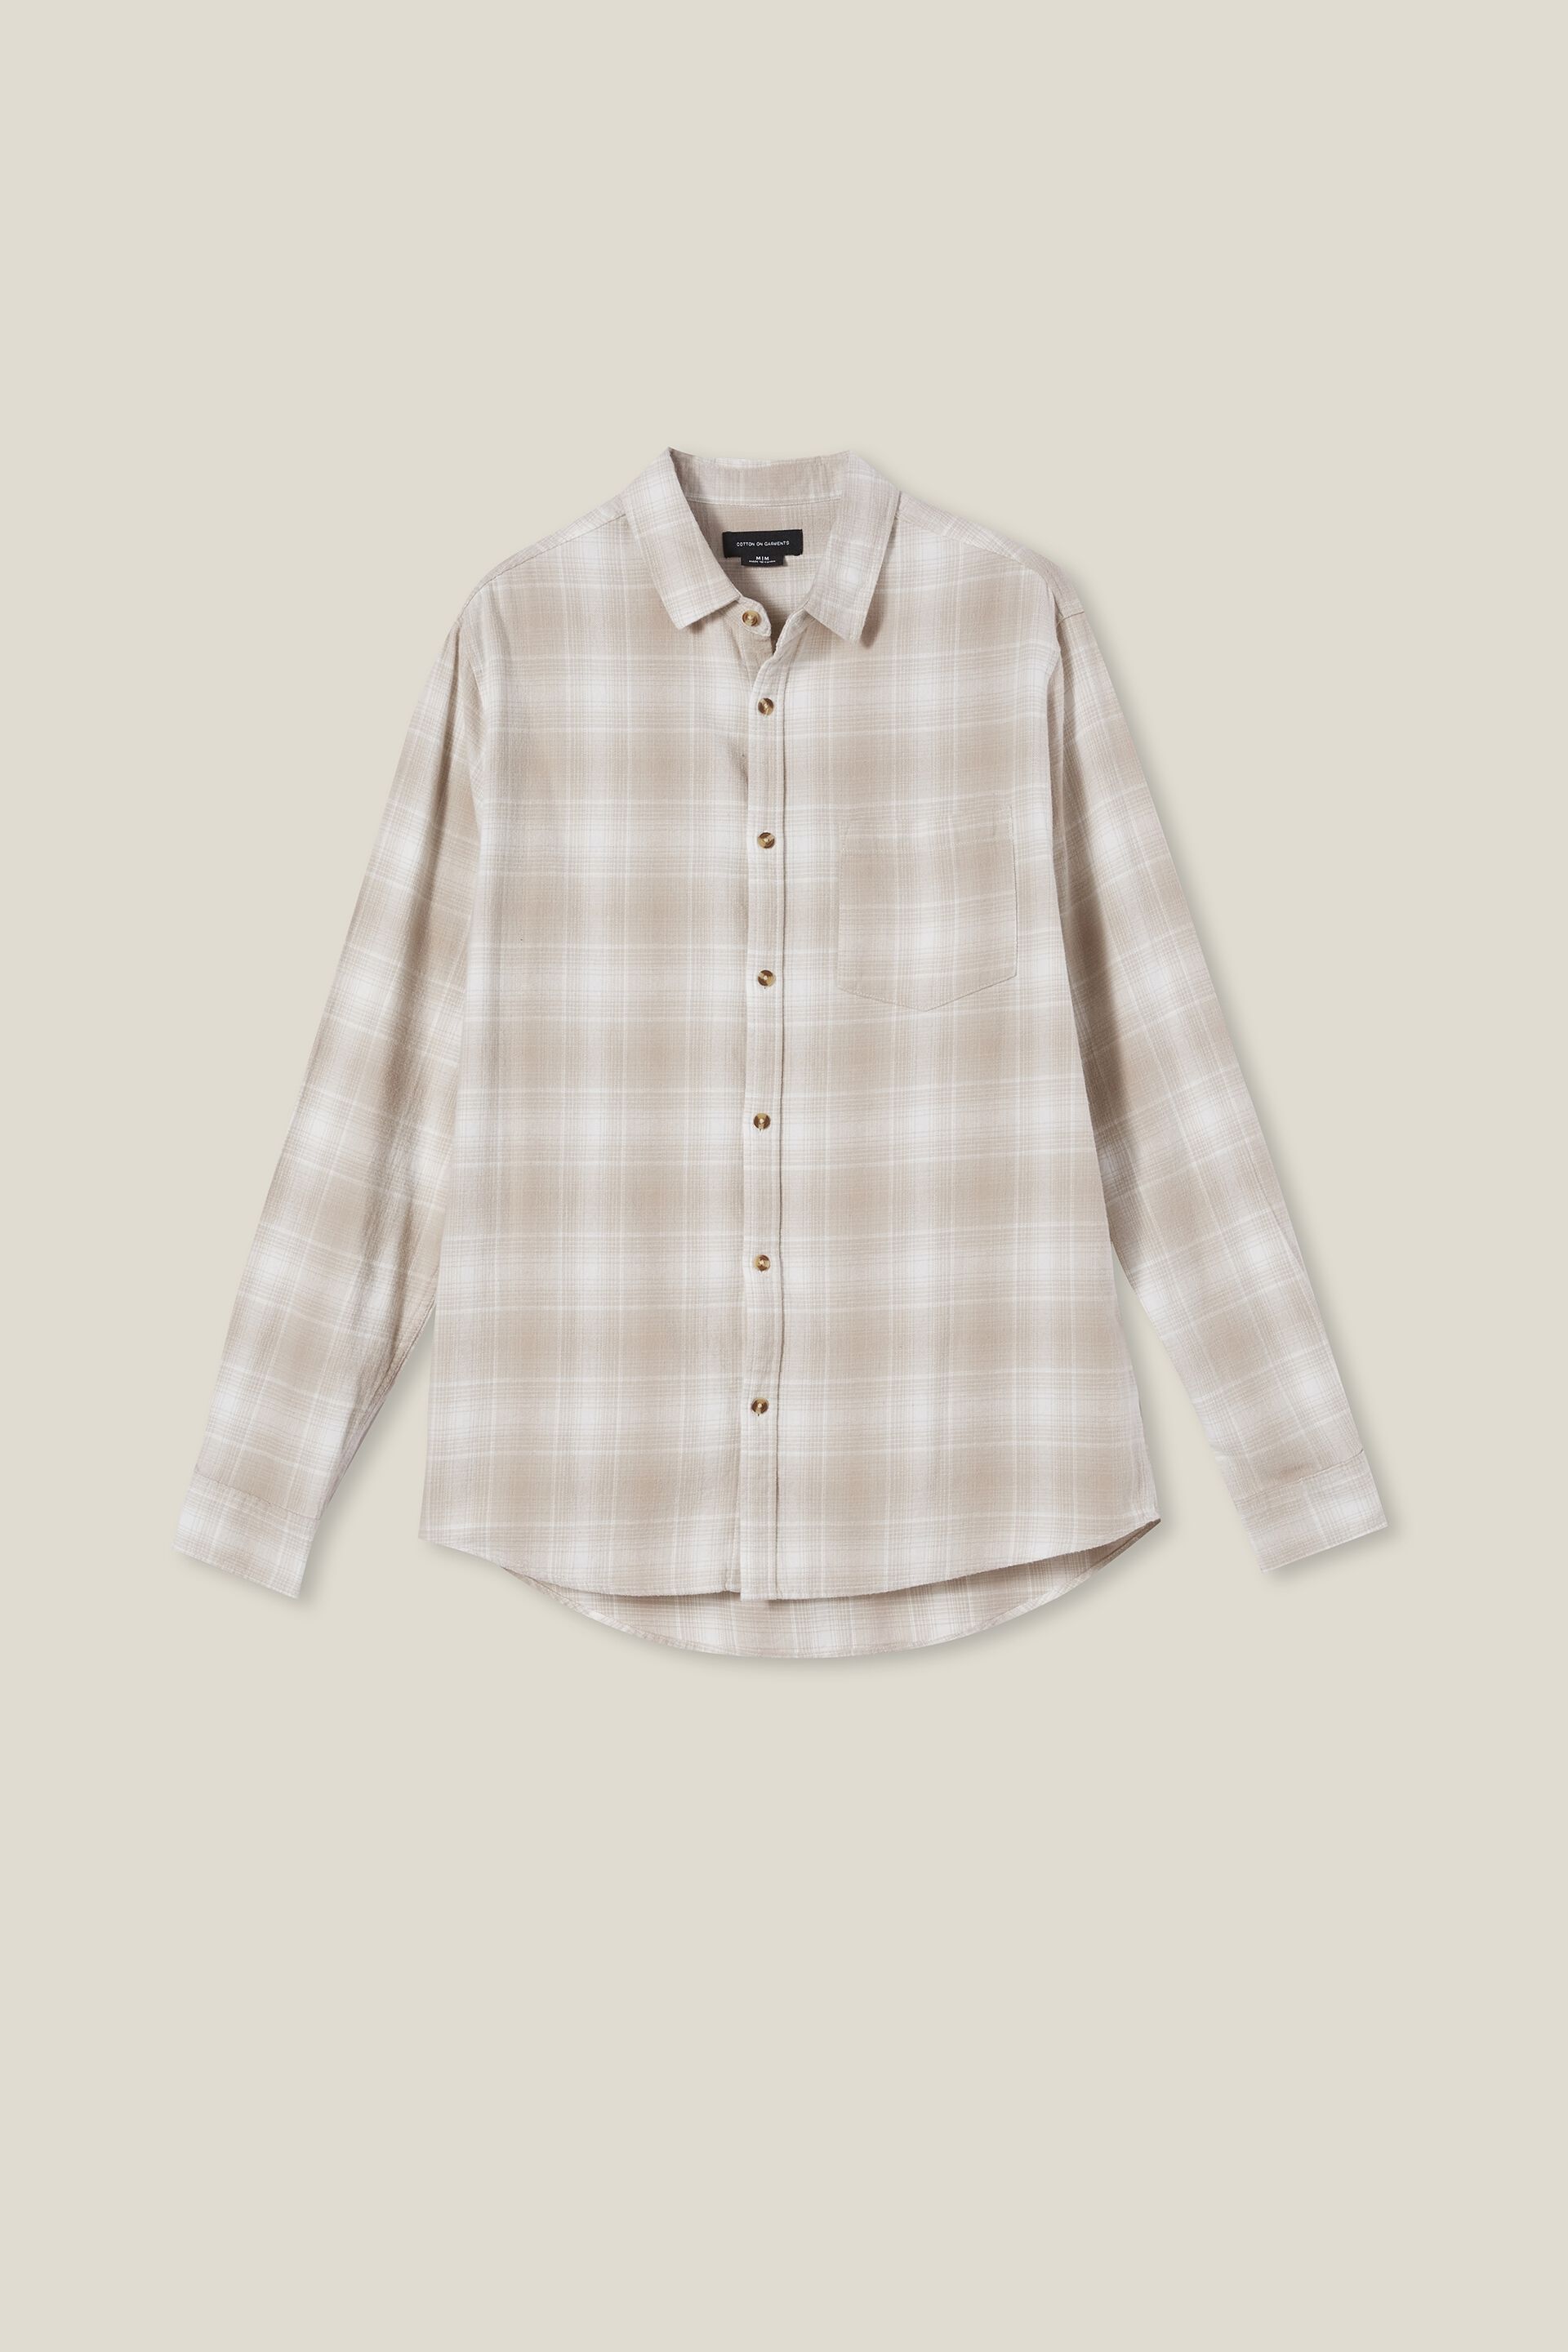 上質風合い kinema ombre zip shirt Lサイズ | artfive.co.jp